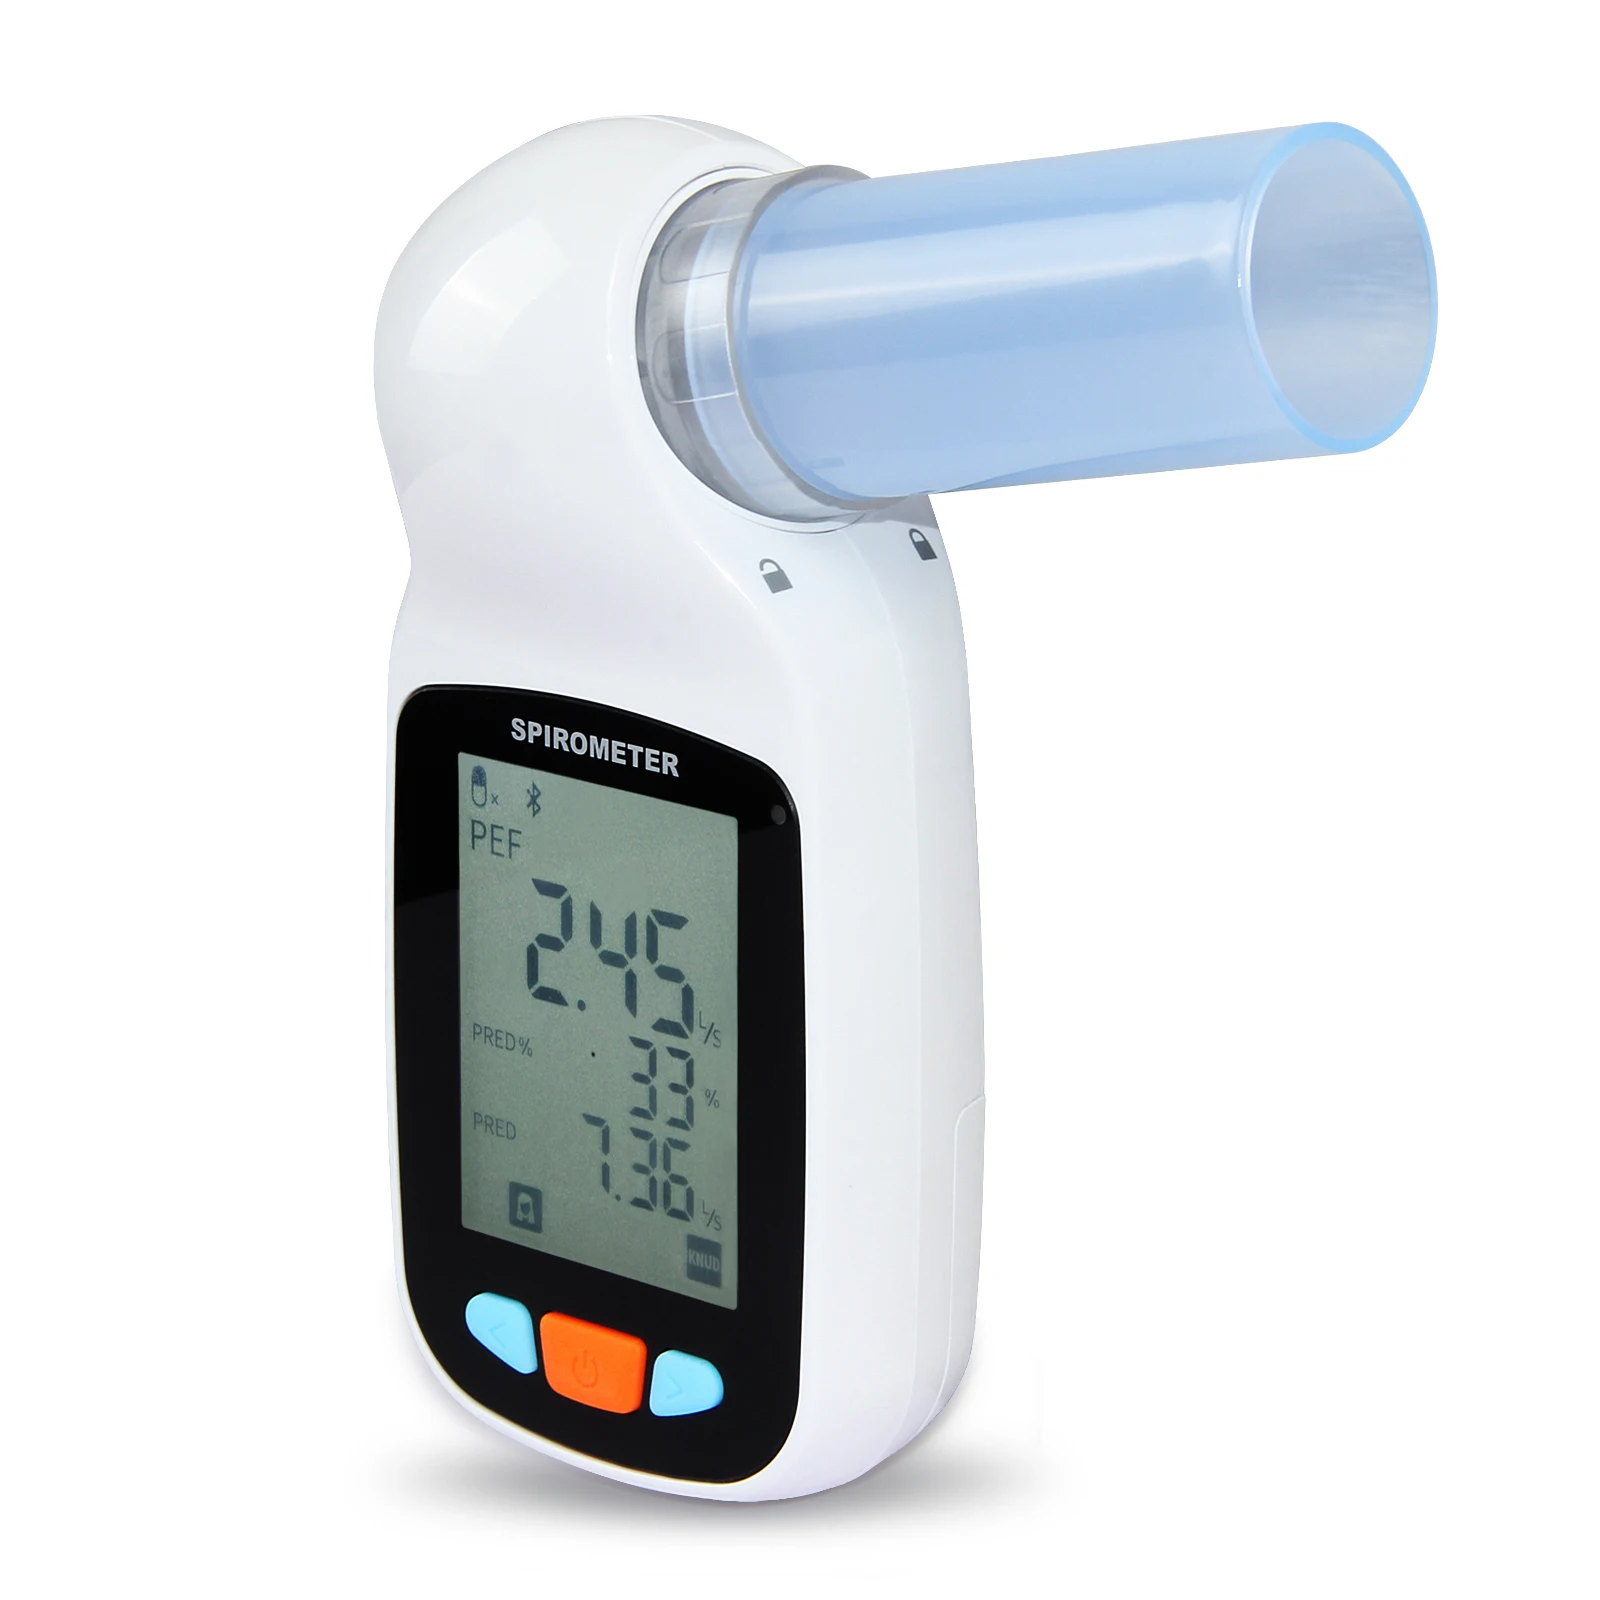 SP70B цифровой спирометр легкое объемное устройство дыхательные мундштуки FVC FEV